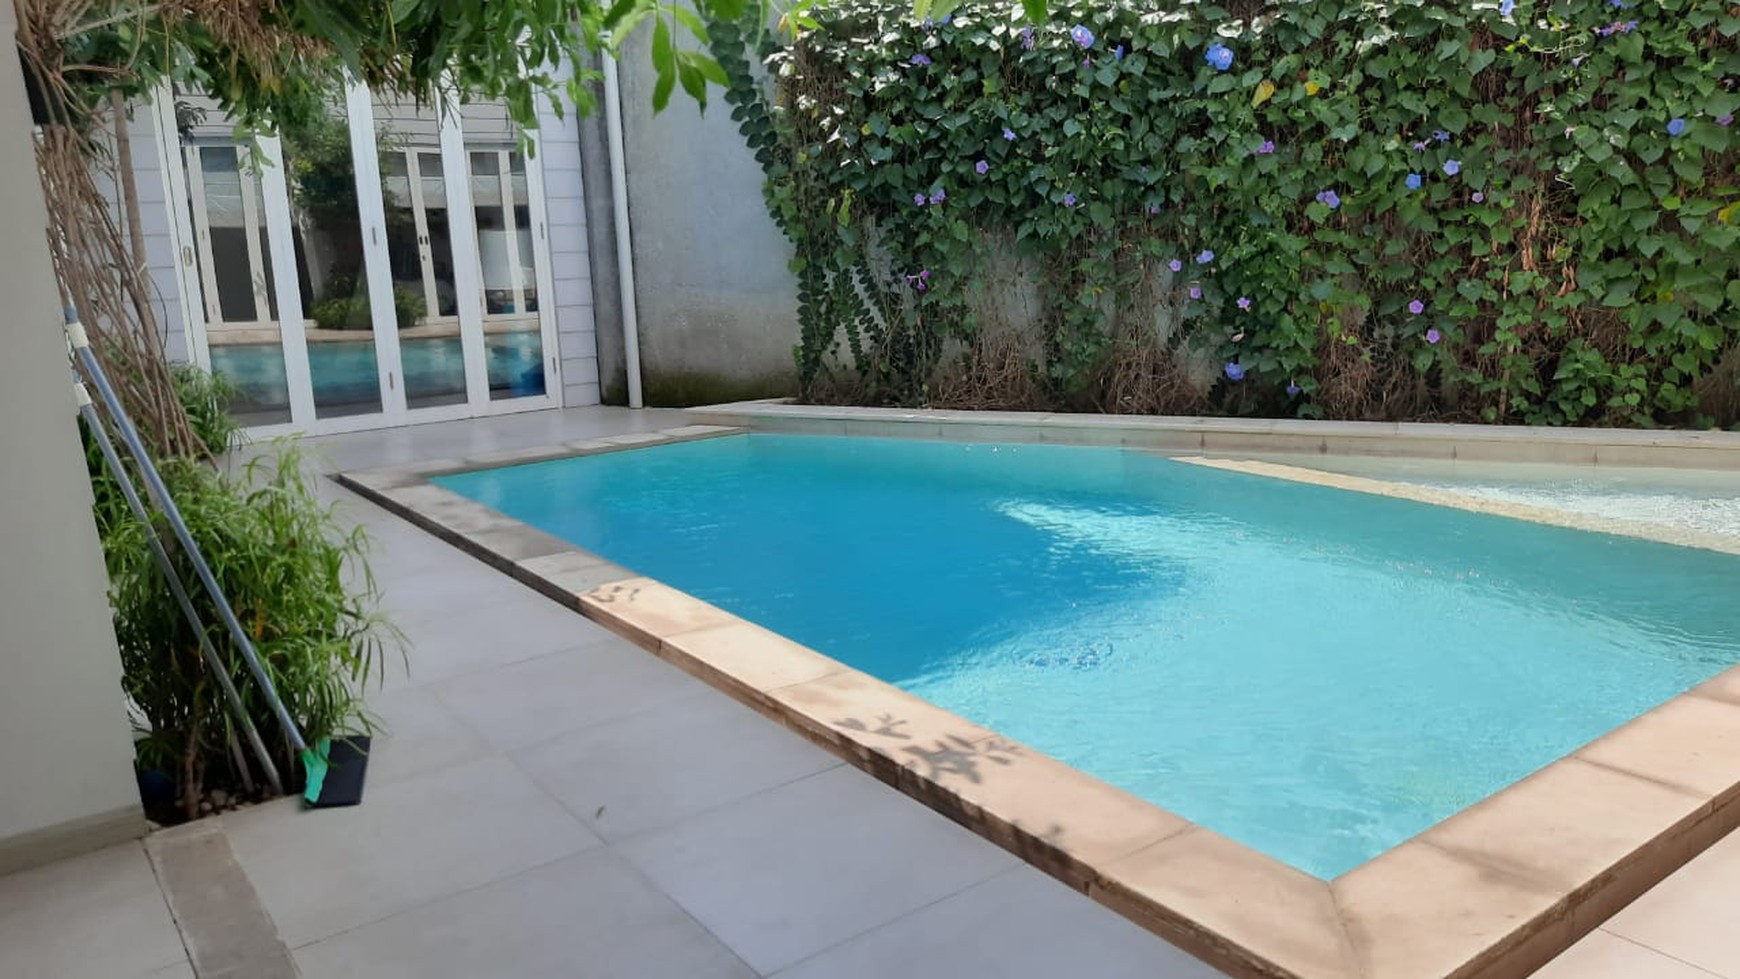 Rumah Keren Dengan Swimming Pool Dekat Bexchange Mall Harga Bagus Di Sawah Baru Ciputat.